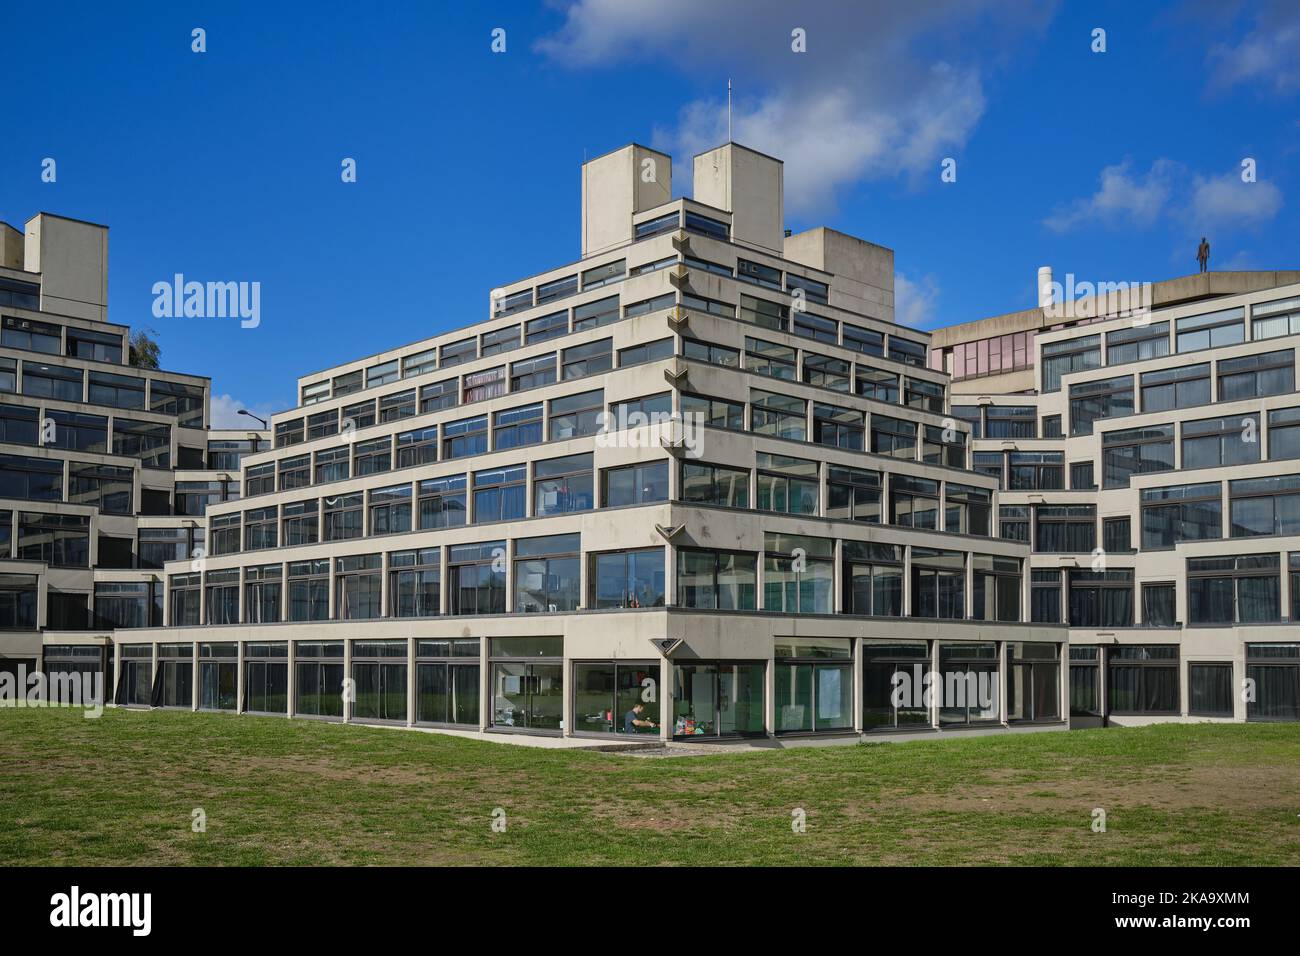 Appartements étudiants, connus sous le nom de Ziggurats, à l'Université d'East Anglia, Norwich, conçus par Sir Denys Lasdun en 1960s Banque D'Images